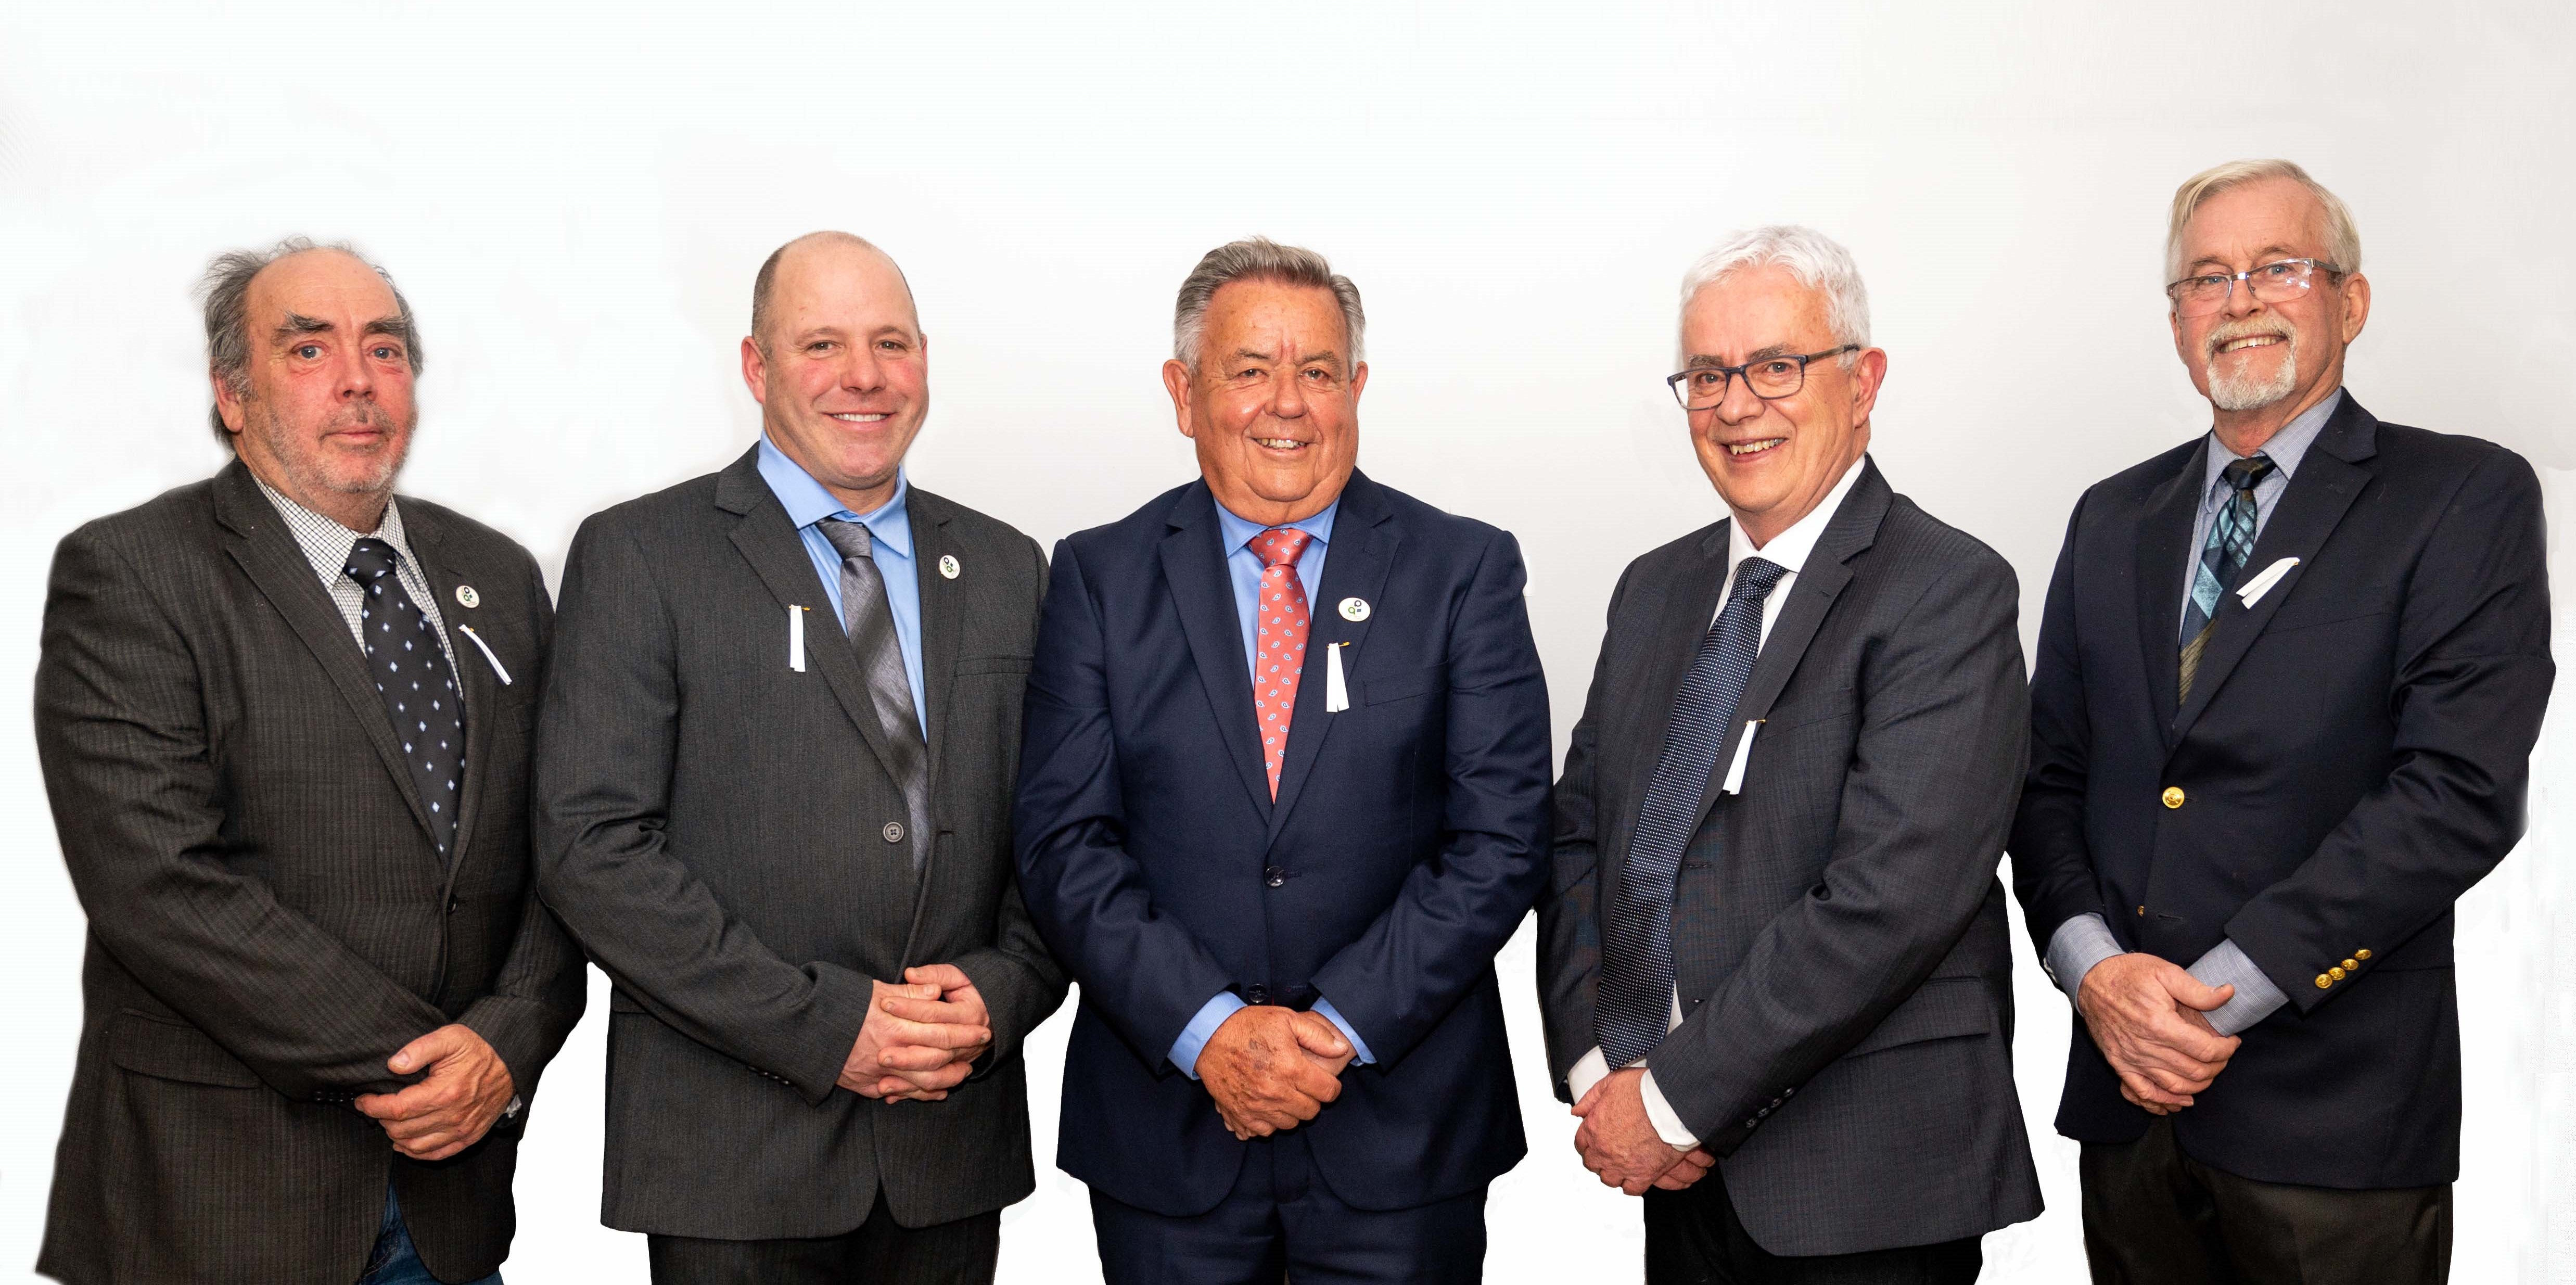 Conseil municipal 2022-2026, de gauche à droite : Ian Walker (conseiller), Antoni Viau (conseiller), Yves Laviolette (maire), Benoit Lamarche (conseiller), Jean-Pierre Cadieux (conseiller).